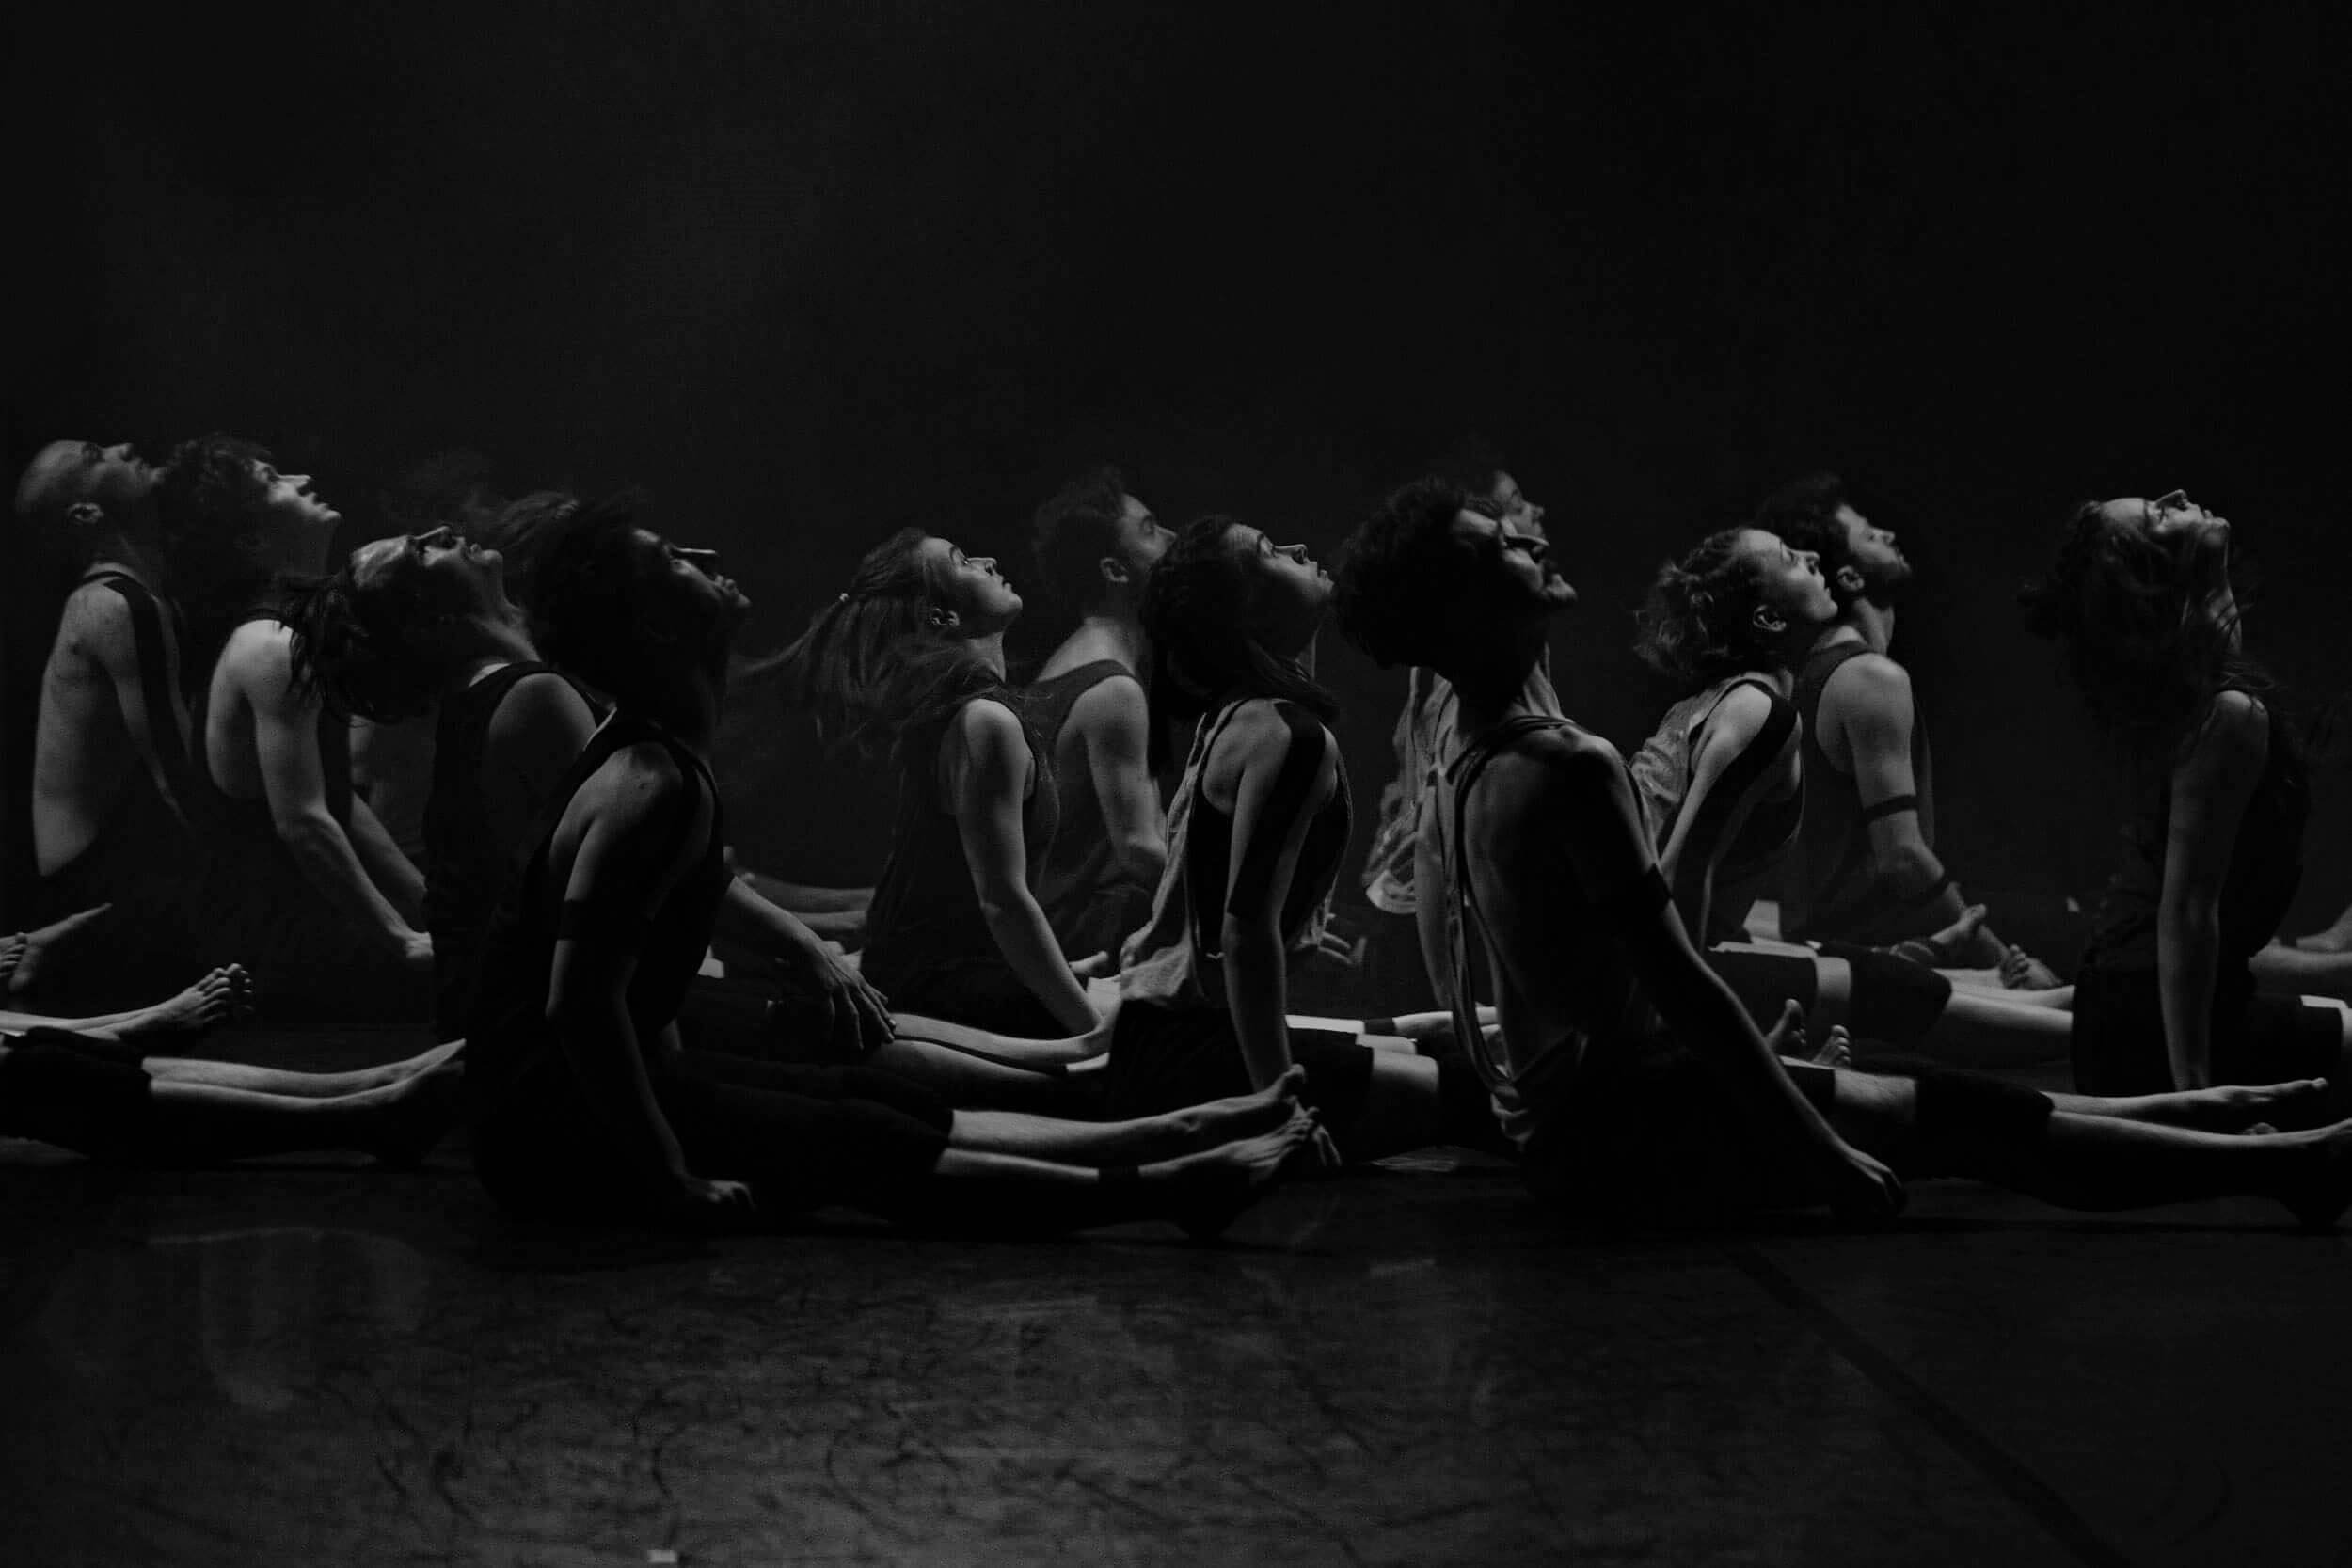 6. Flying fish- czarno-białe zdjęcie, na którym znajdują się siedzący na scenie tancerze, mający skierowane głowy w górę, w stronę świateł.